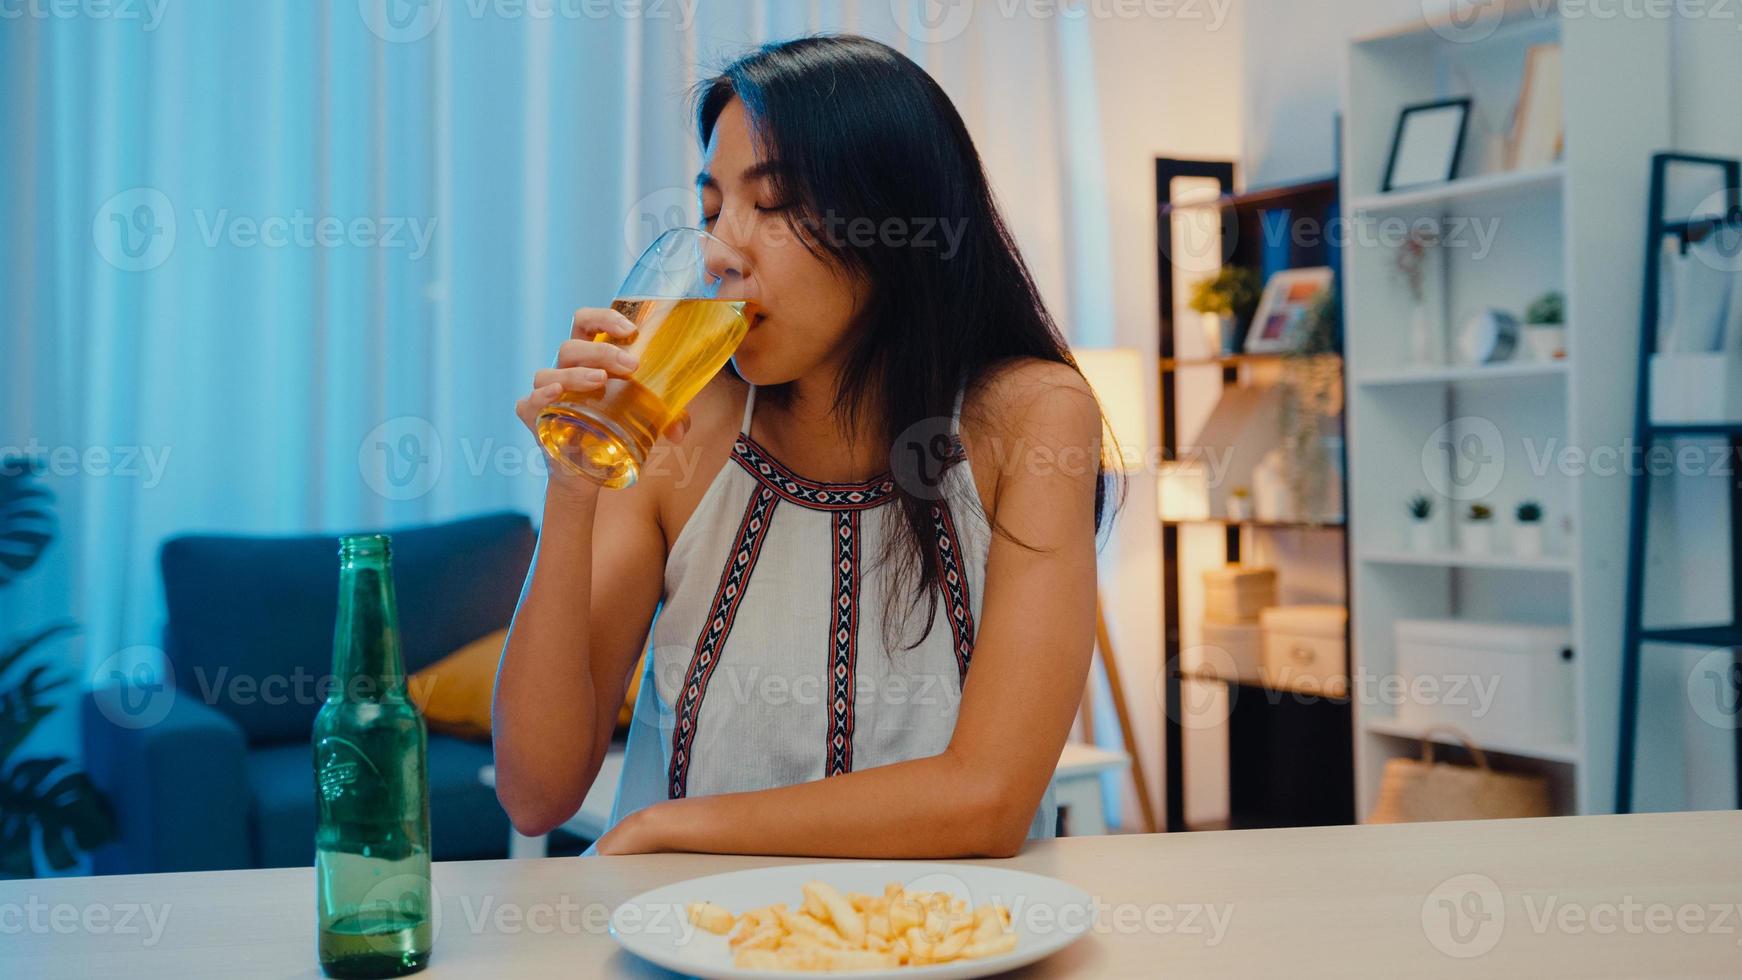 ung asiatisk dam som dricker öl som har roligt happy night party nyårshändelse online firande via videosamtal via telefon hemma på natten. social distans, karantän för coronavirus. synvinkel eller pov foto